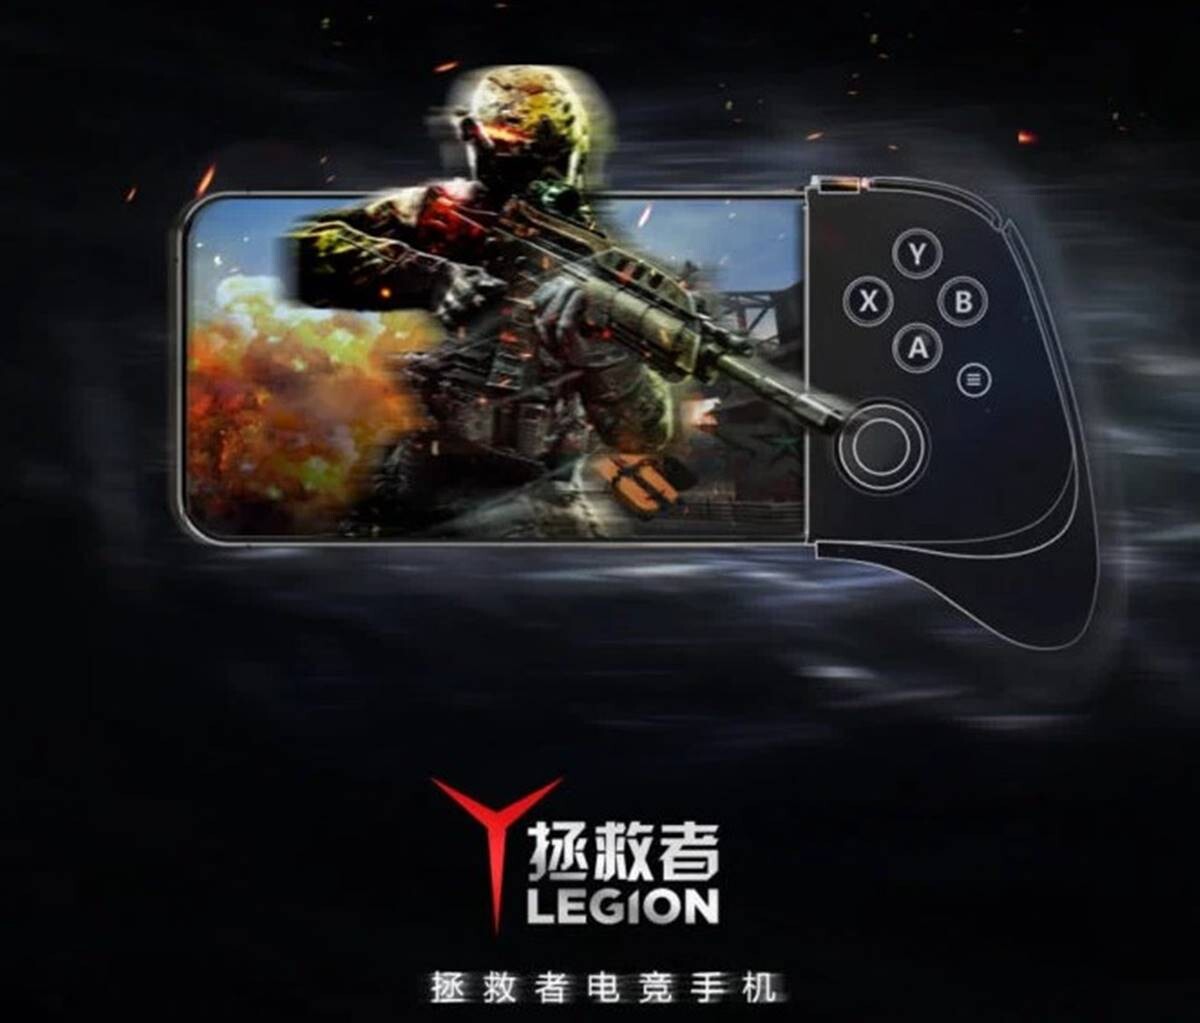 Lenovo Legion Oyun Telefonunun Tanıtım Görseli Yayınlandı 